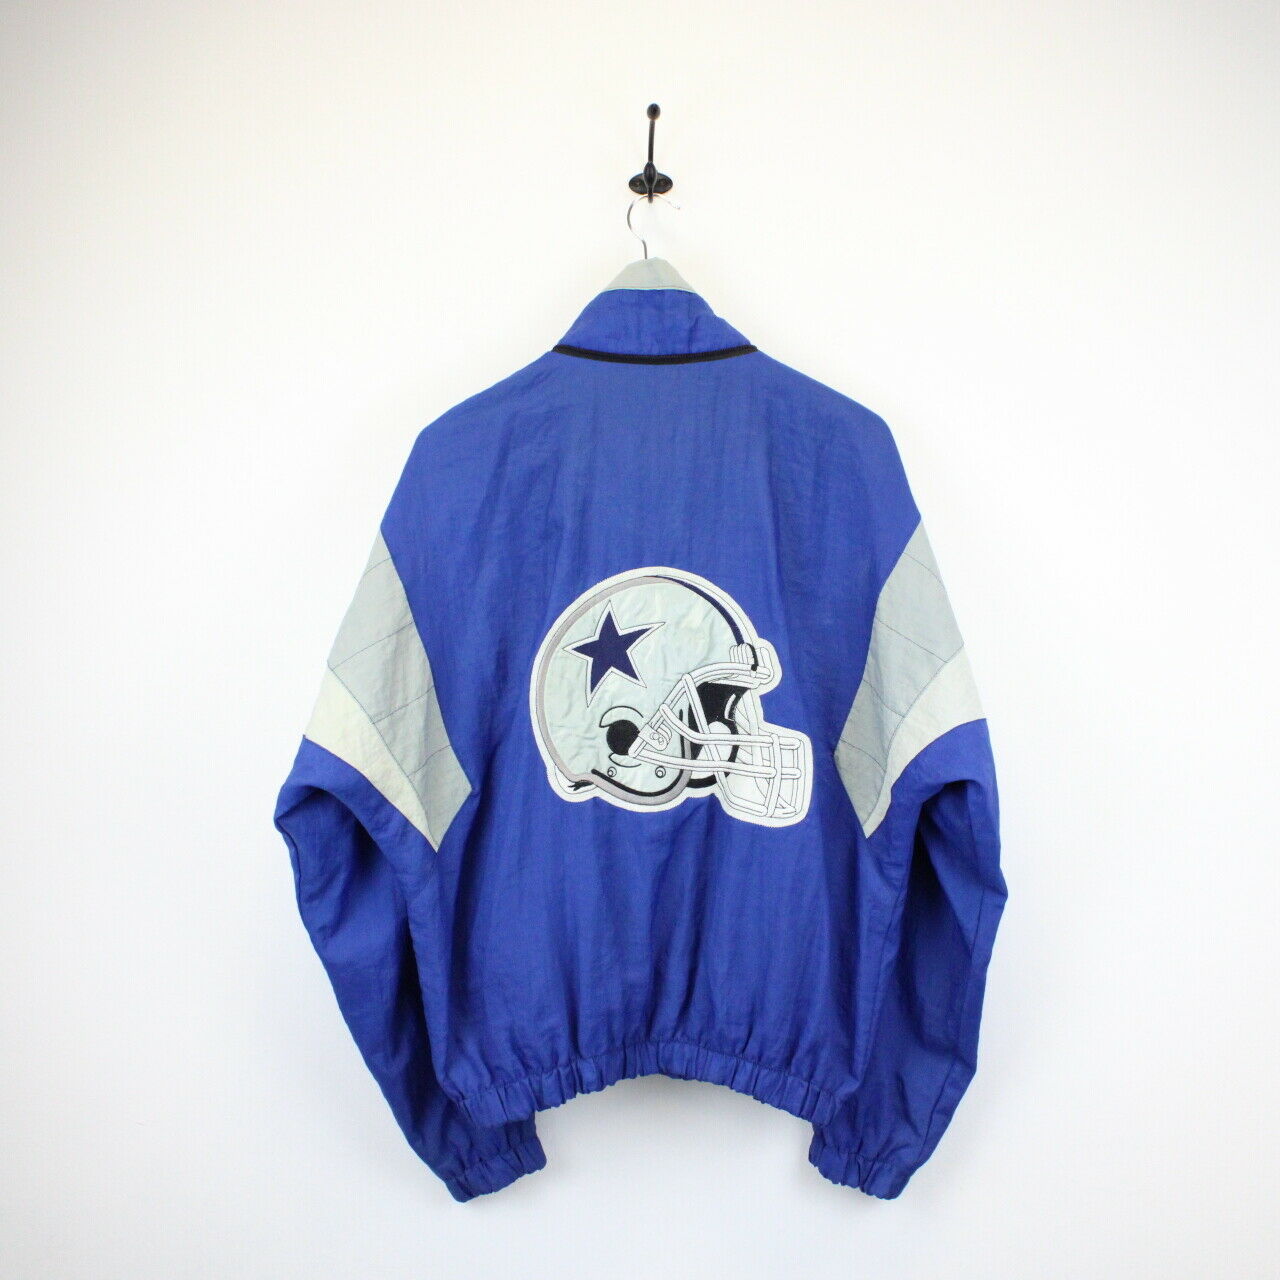 Vintage 90s NFL STARTER Dallas COWBOYS Jacket | Large